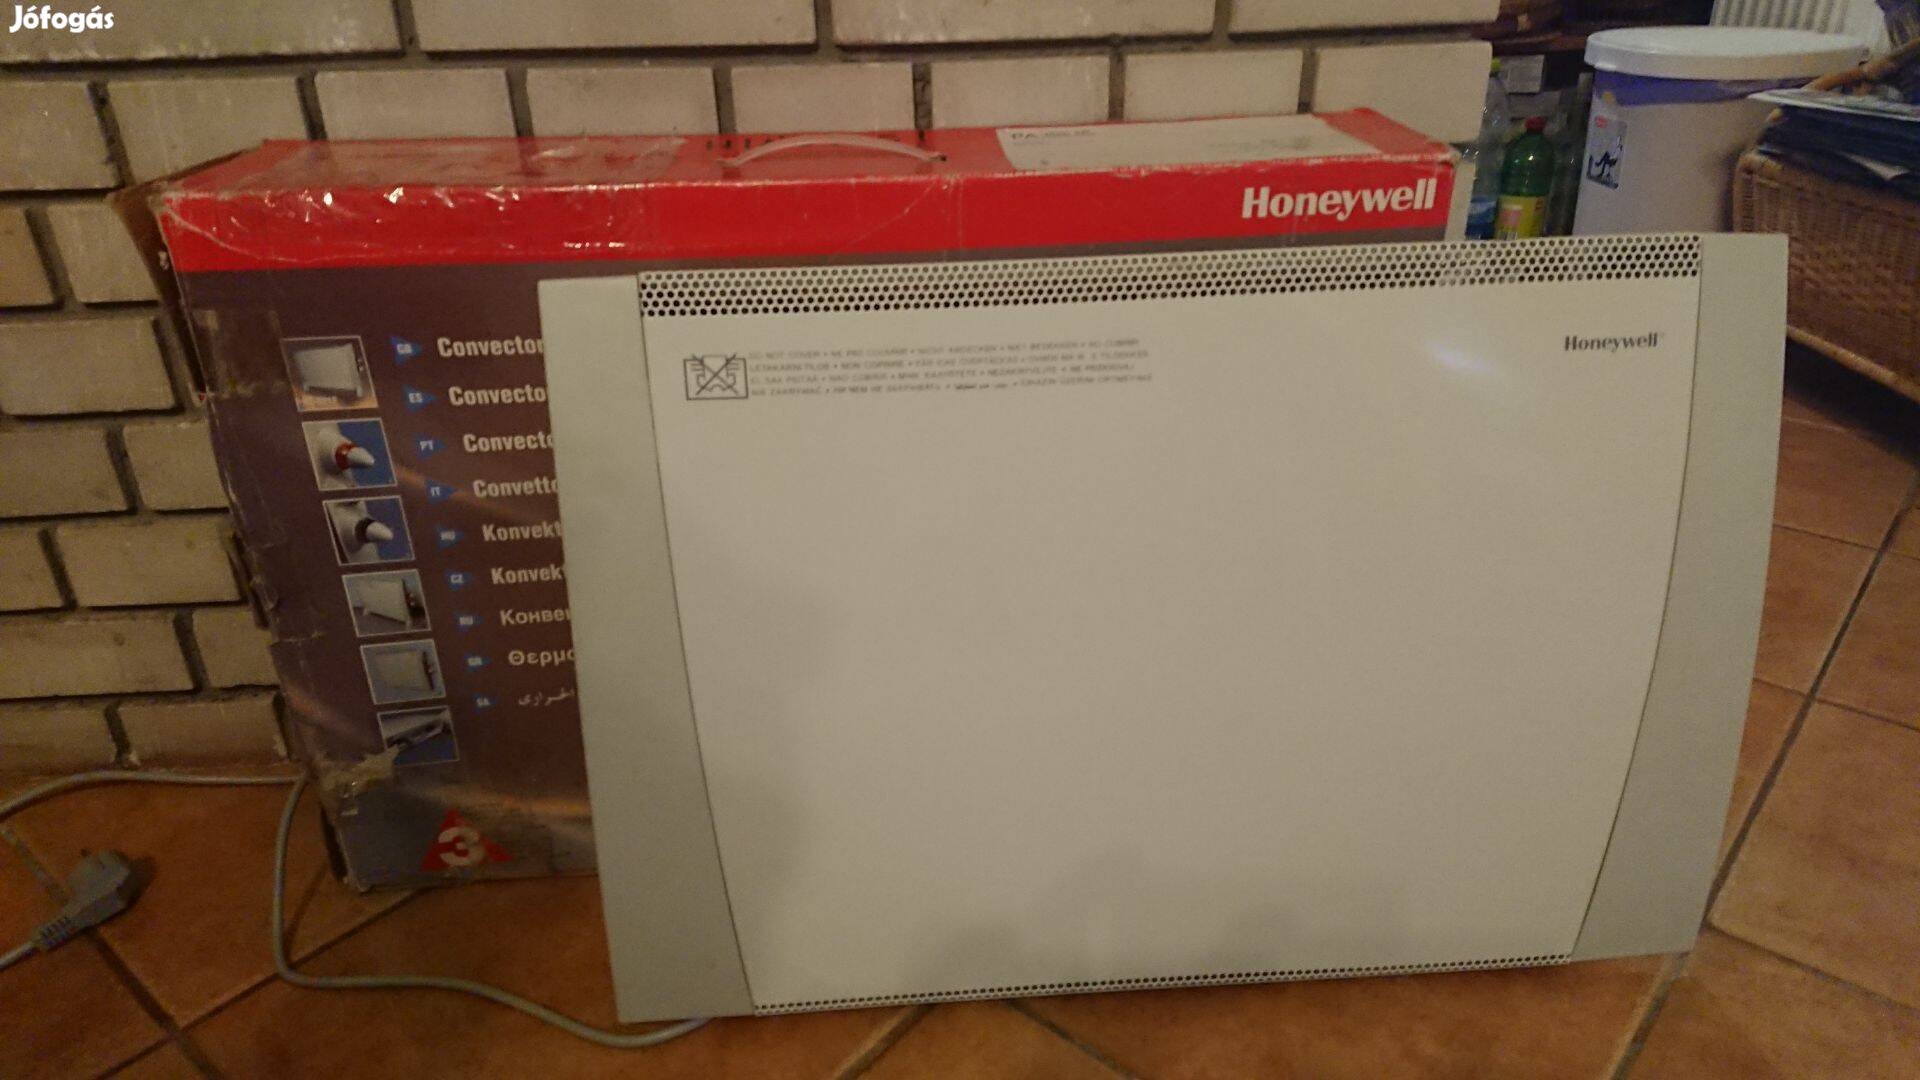 Honeywell termosztátos hősugárzó újszerű állapotban